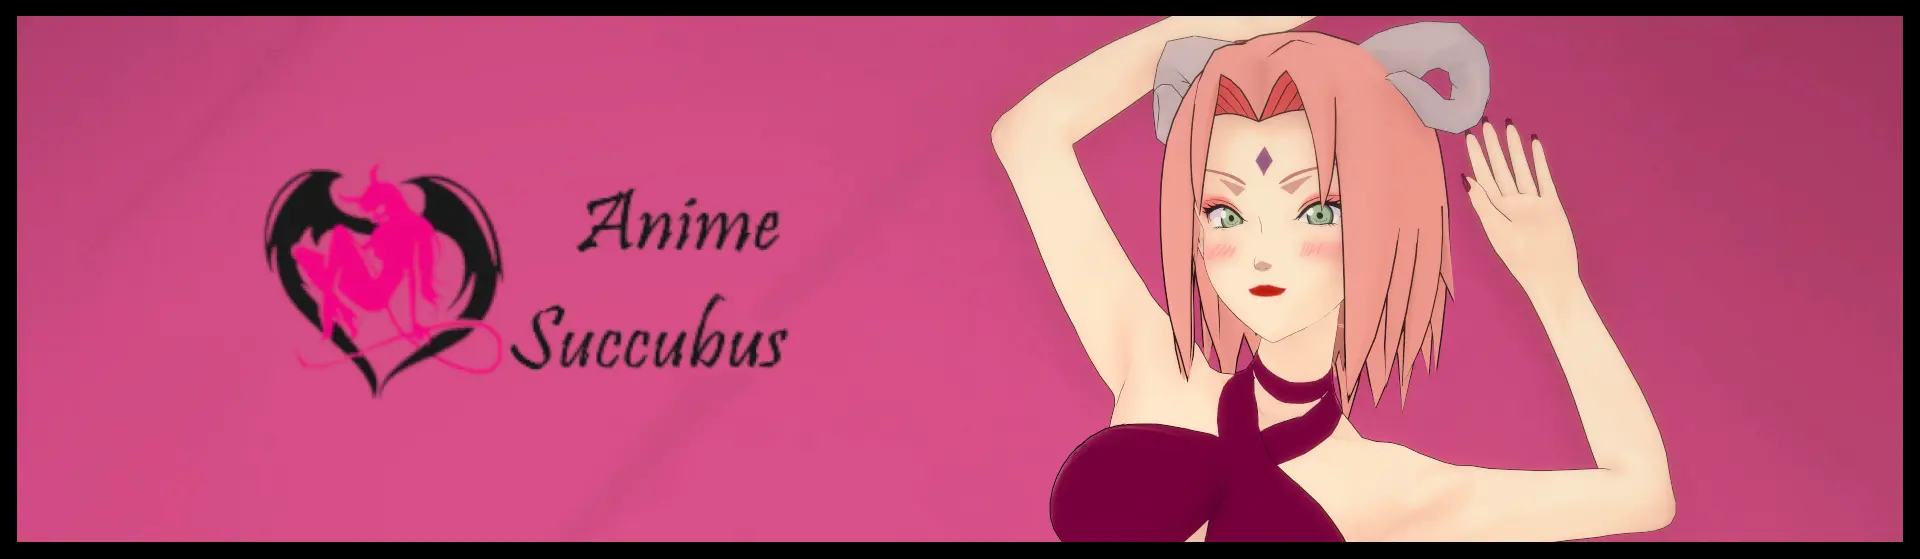 Virtual Anime Succubus - Sakura main image